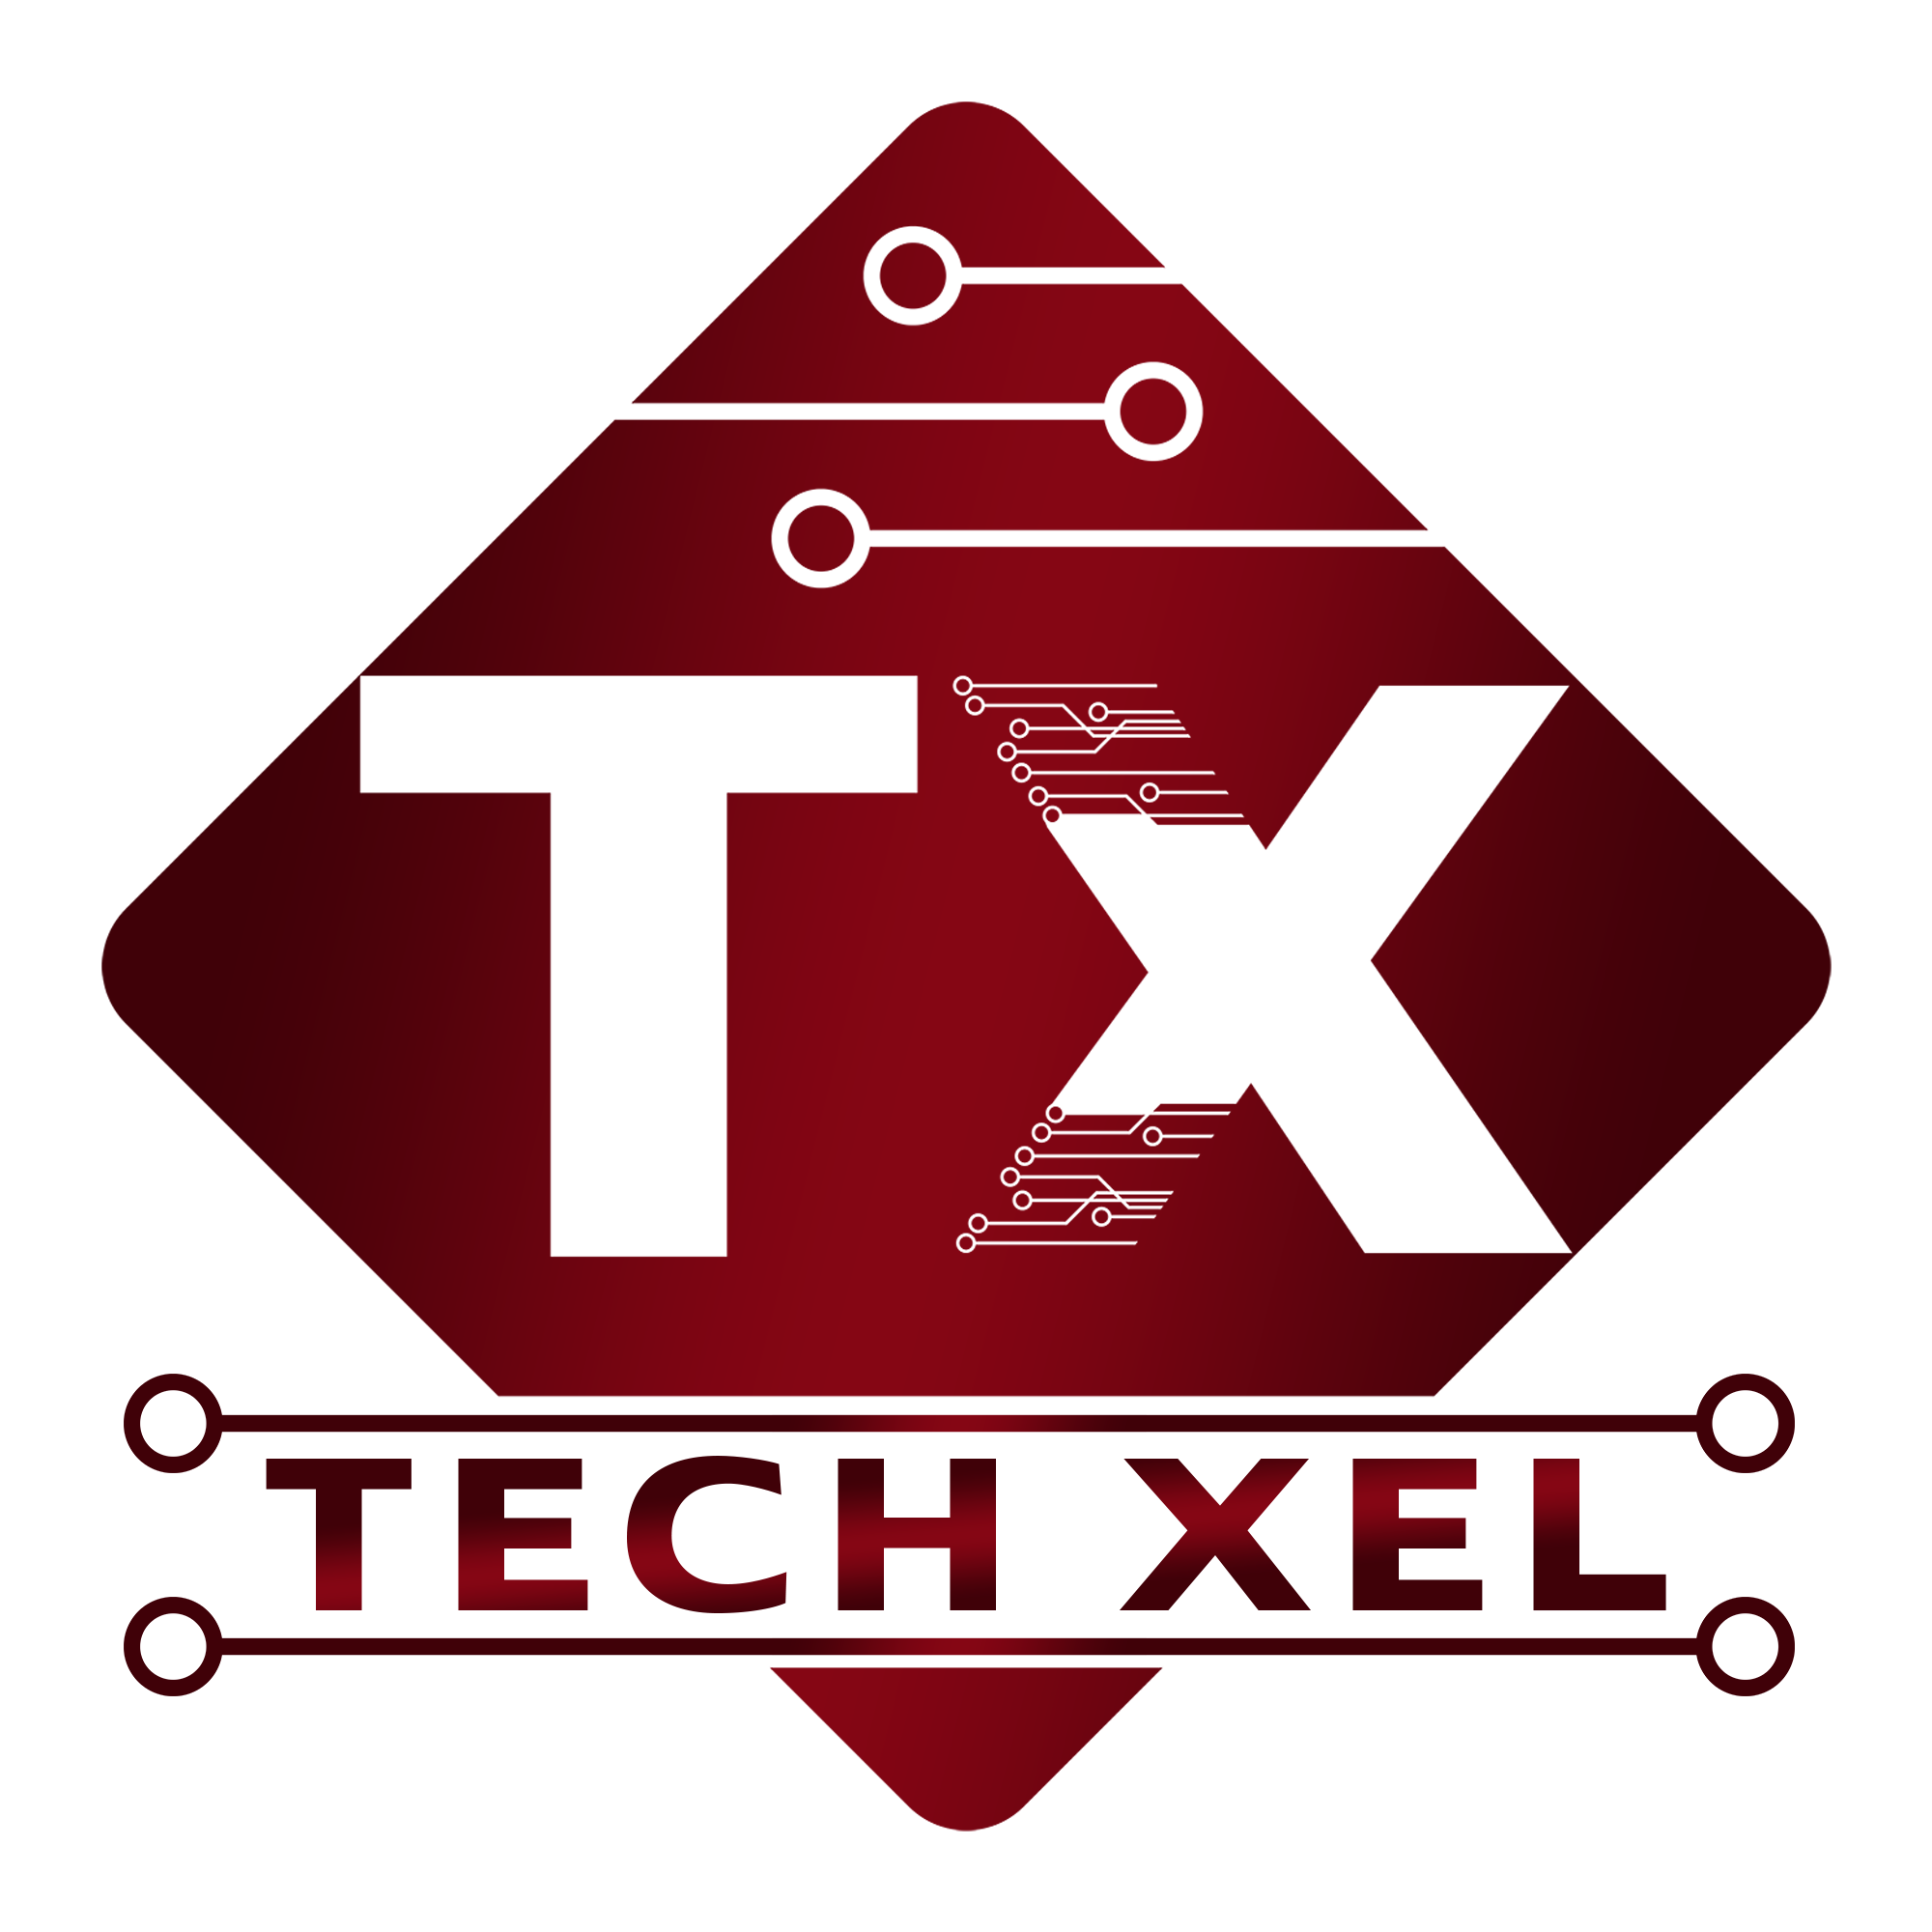 Tech xel